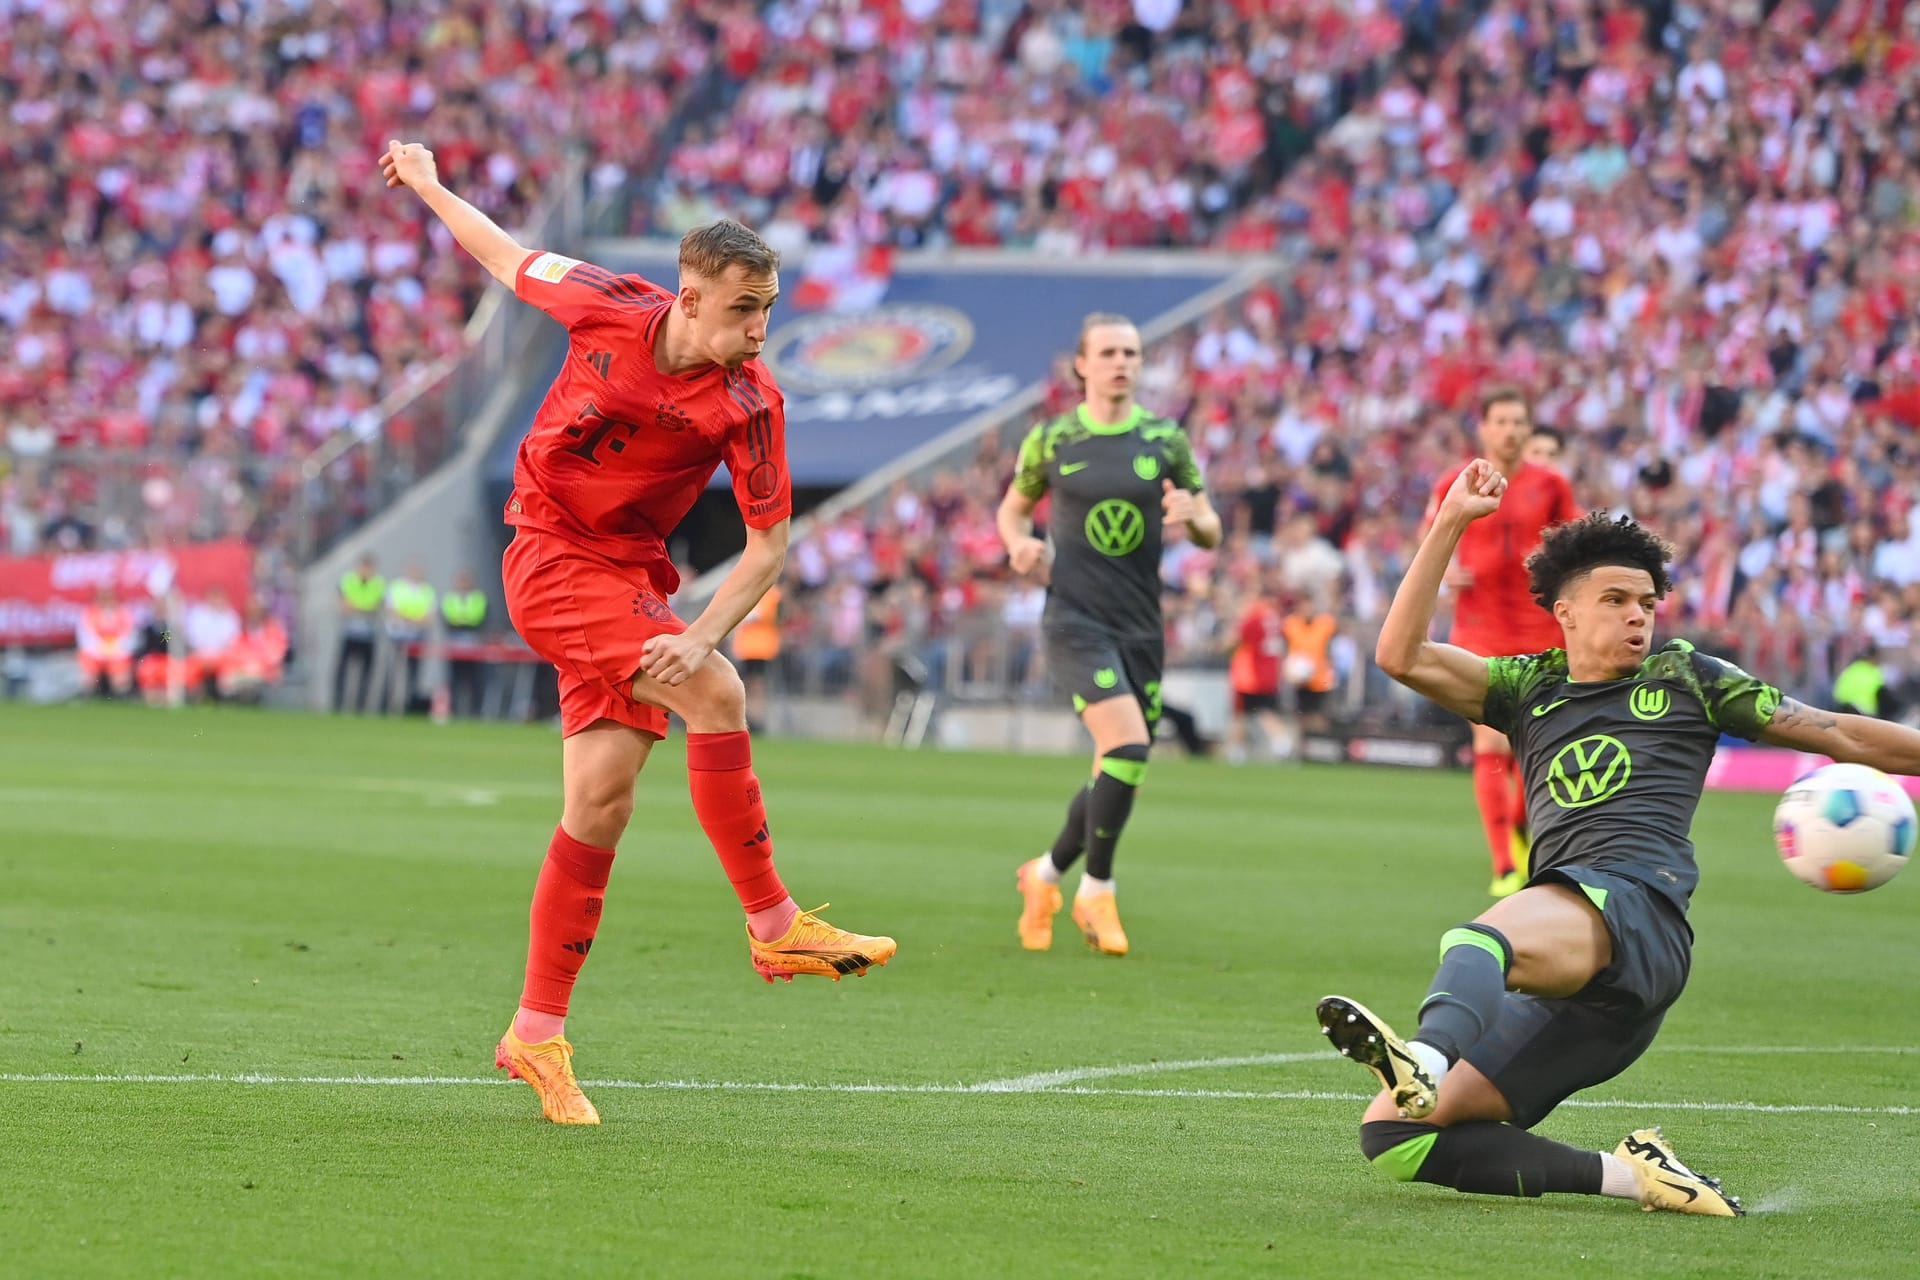 Lovro Zvonarek: Das erste Profitor des 18-Jährige ist unterwegs. Der Mittelfeldspieler erzielt das 1:0 für den FC Bayern gegen Wolfsburg.